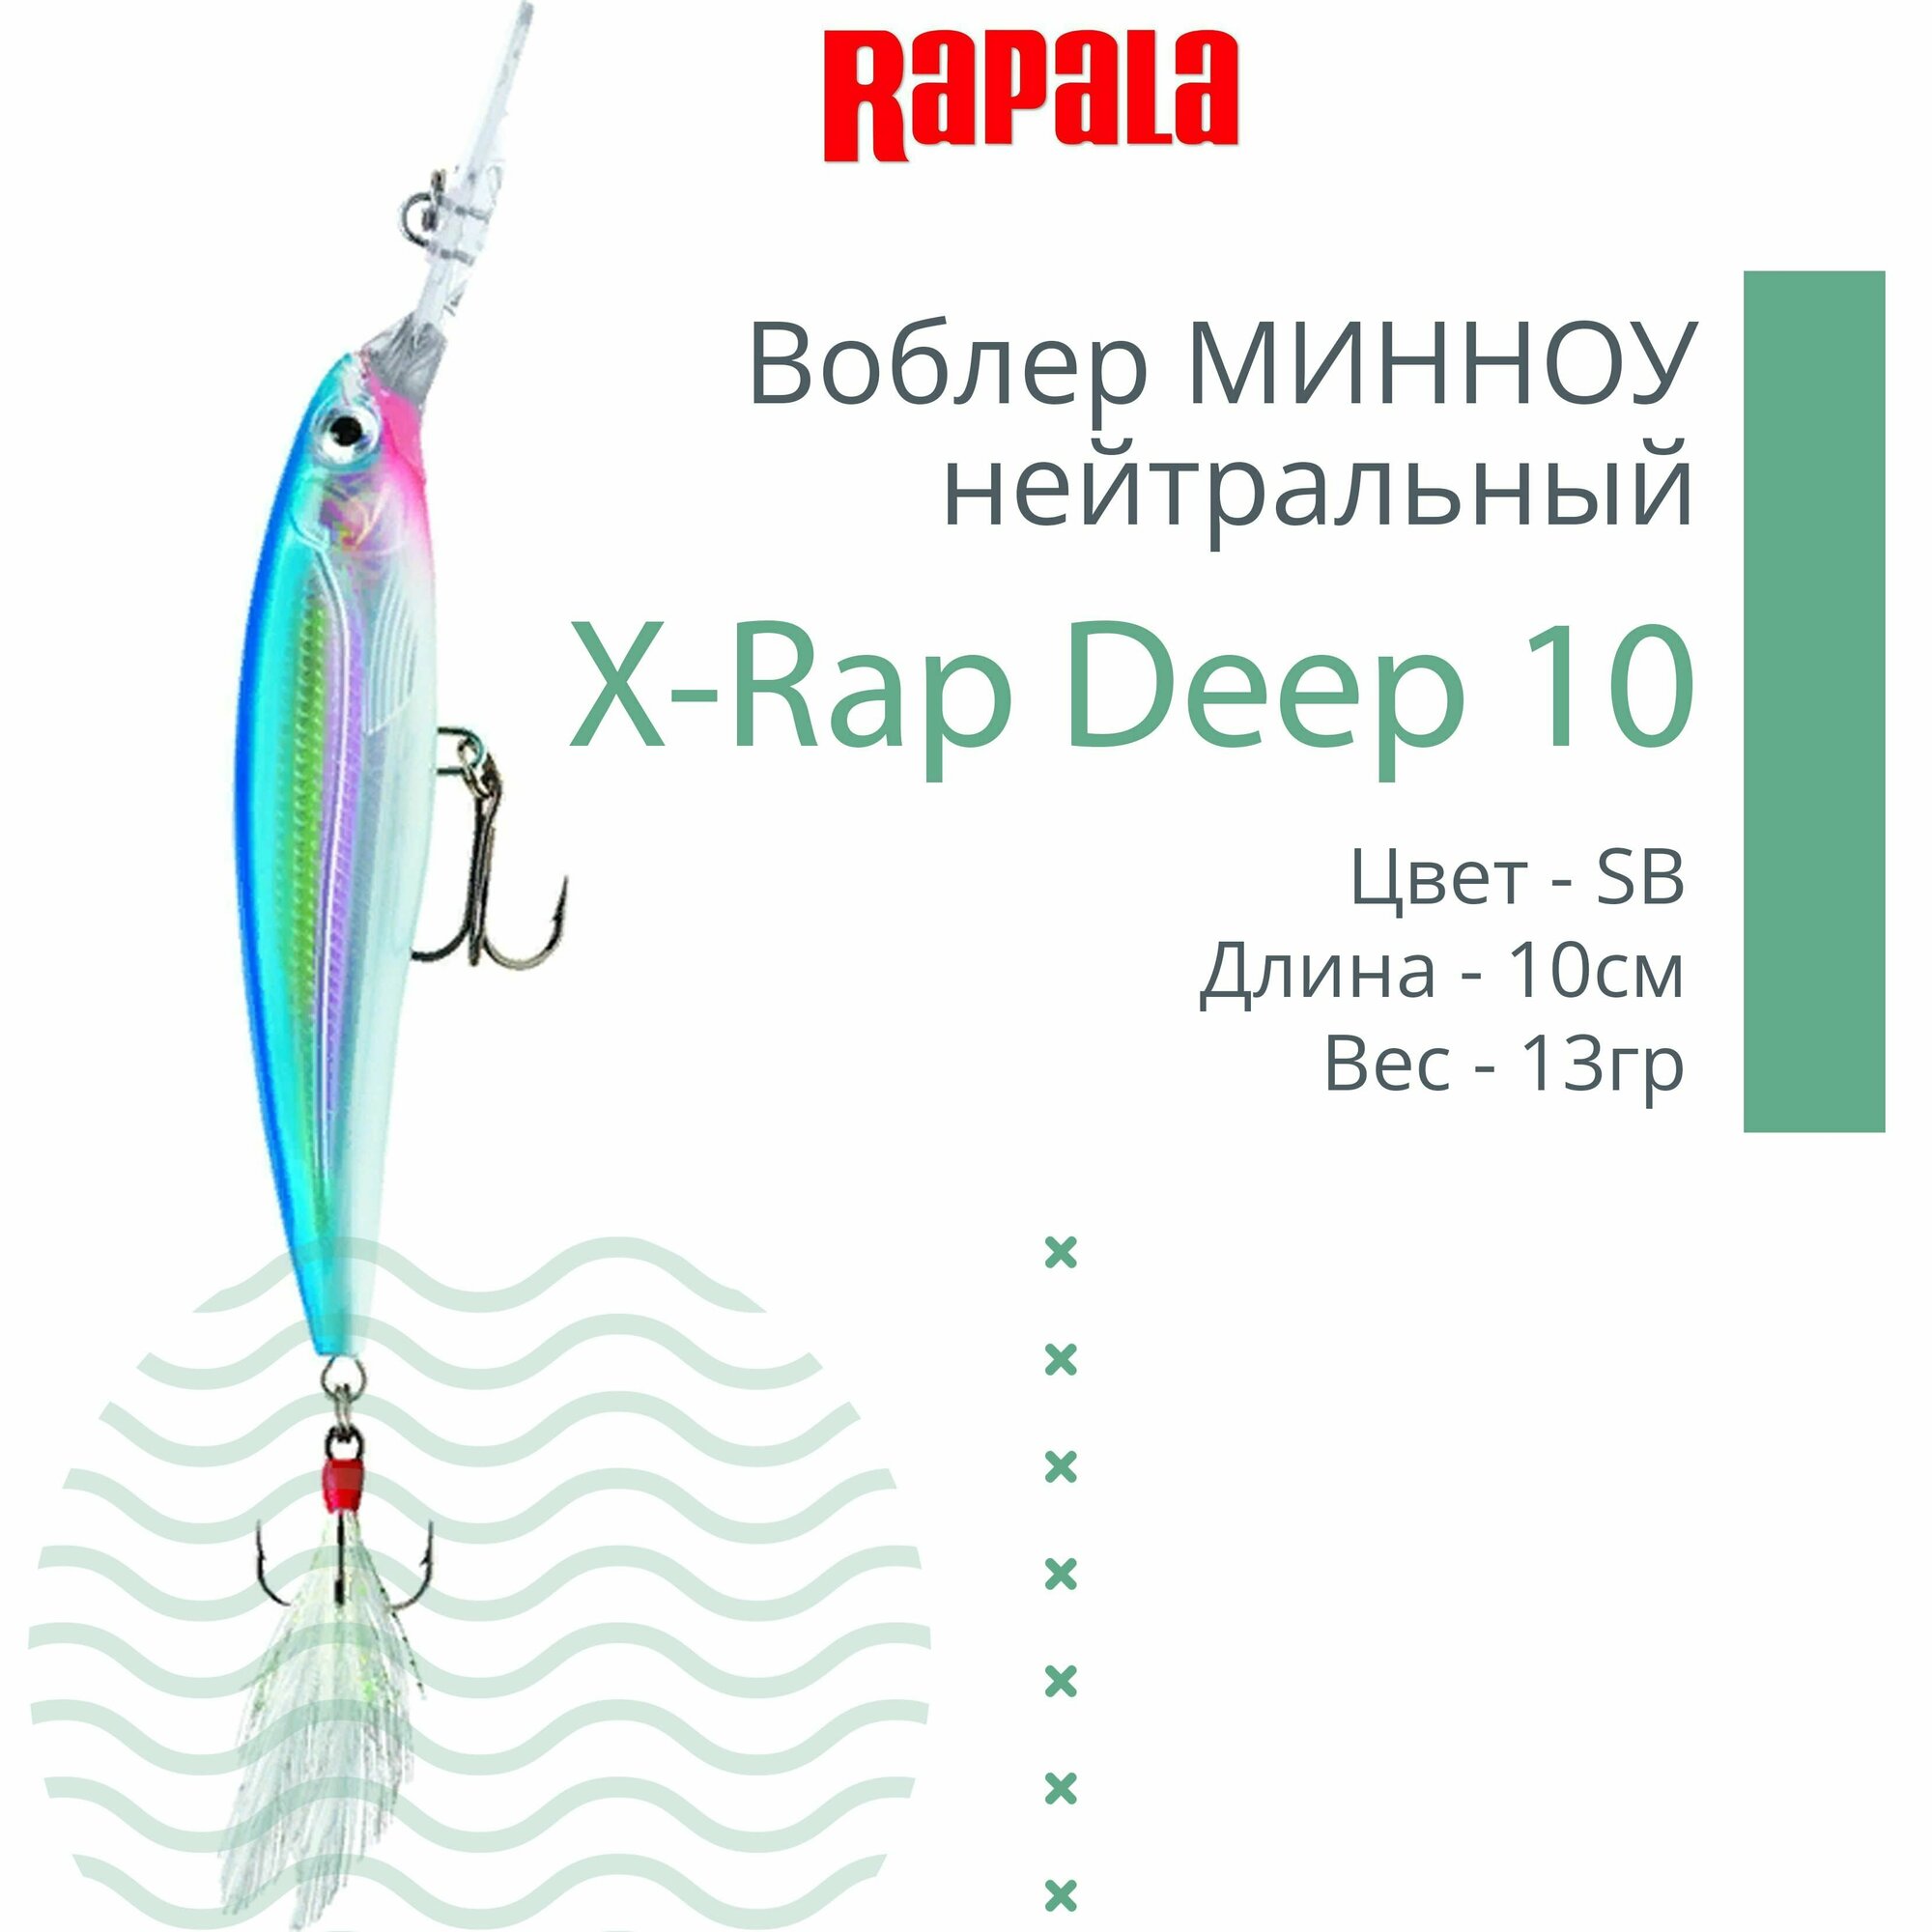 Воблер для рыбалки RAPALA X-Rap Deep 10, 10см, 13гр, цвет SB, нейтральный